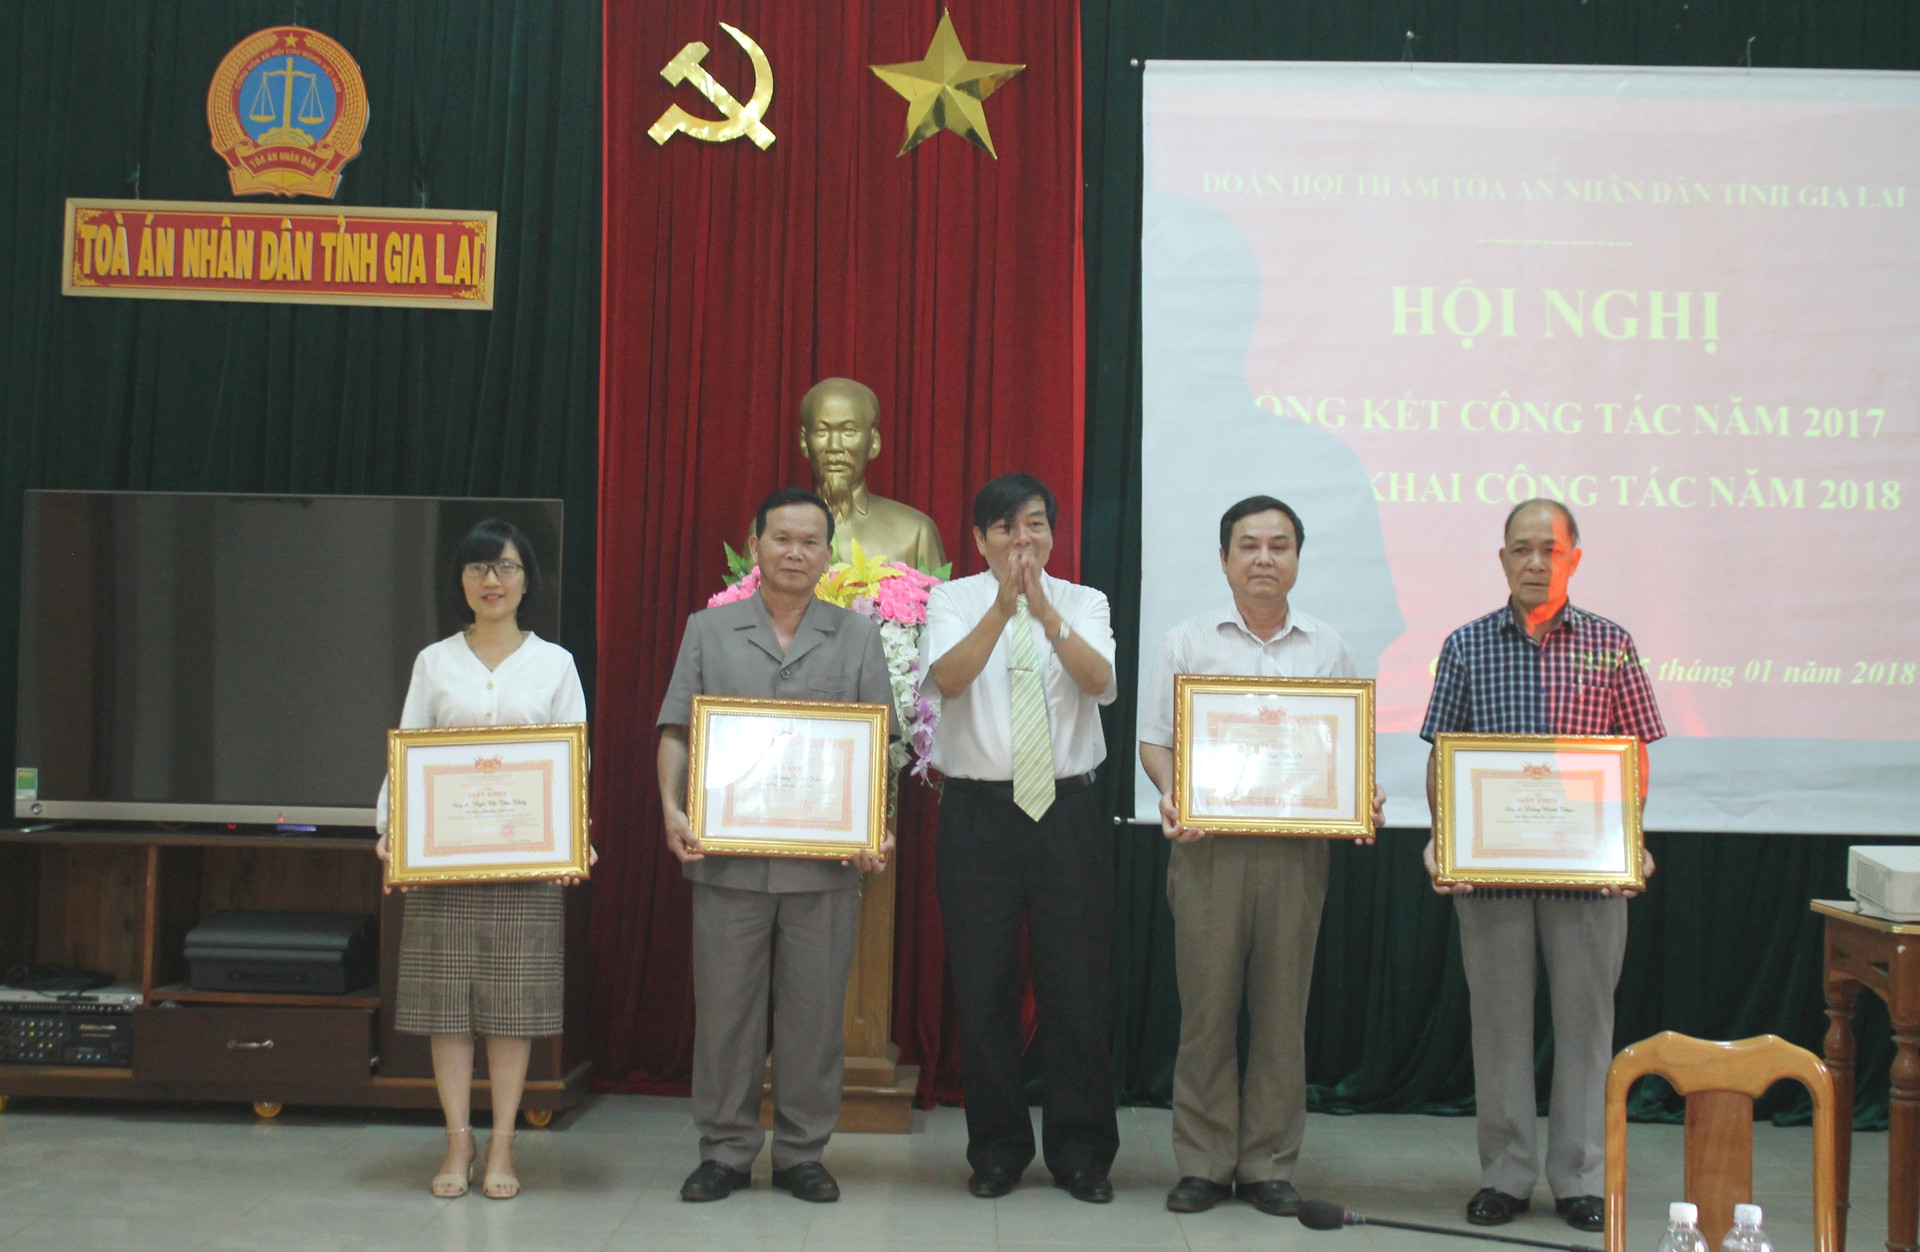 Đoàn HTND tỉnh Gia Lai tổng kết công tác năm 2017 và triển khai công tác năm 2018